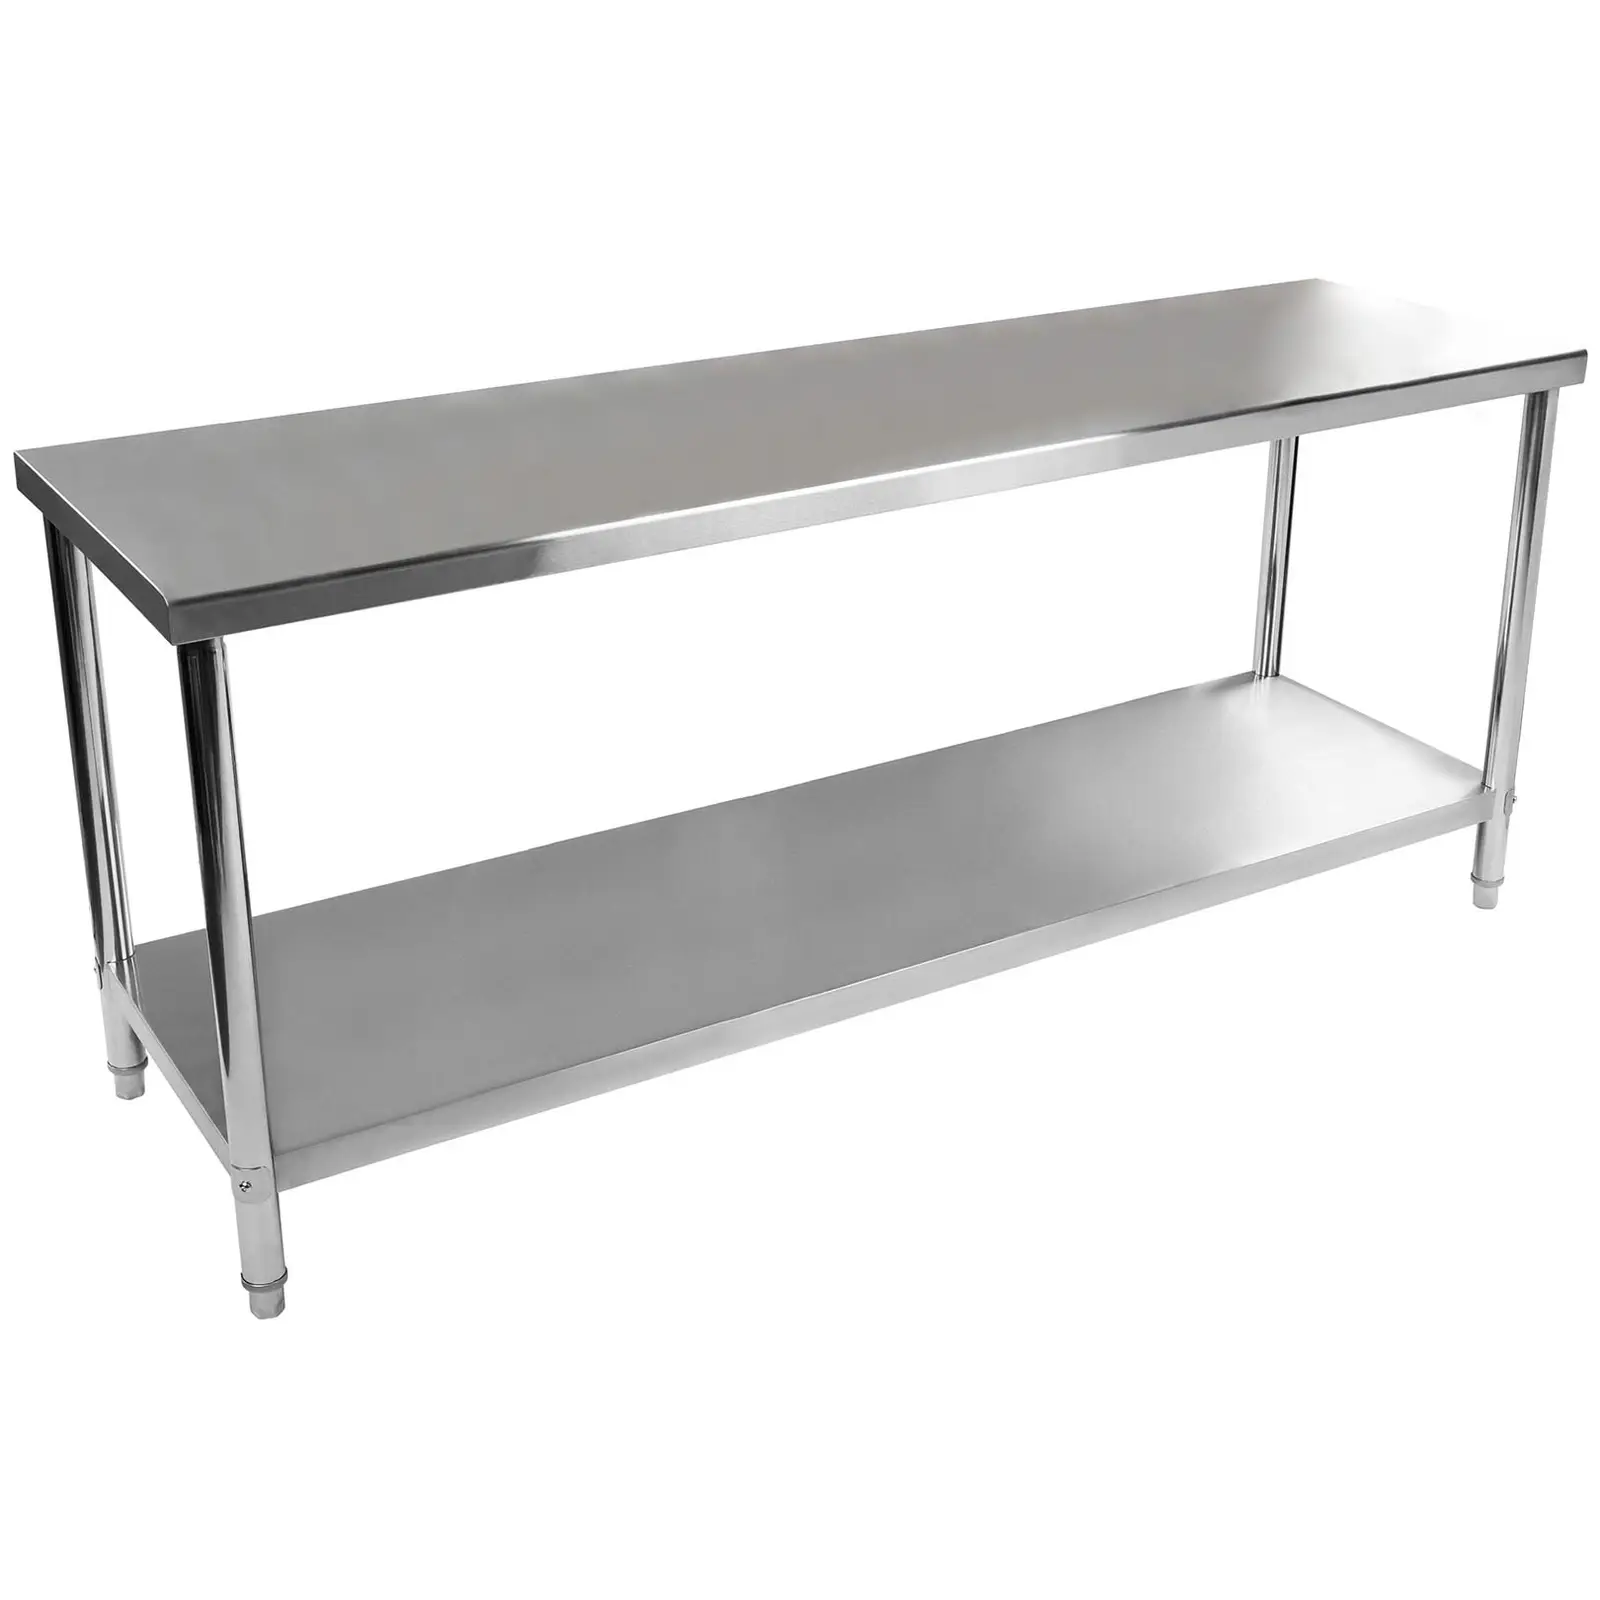 Pracovný stôl z ušľachtilej ocele - 200 x 60 cm - 195 kg nosnosť